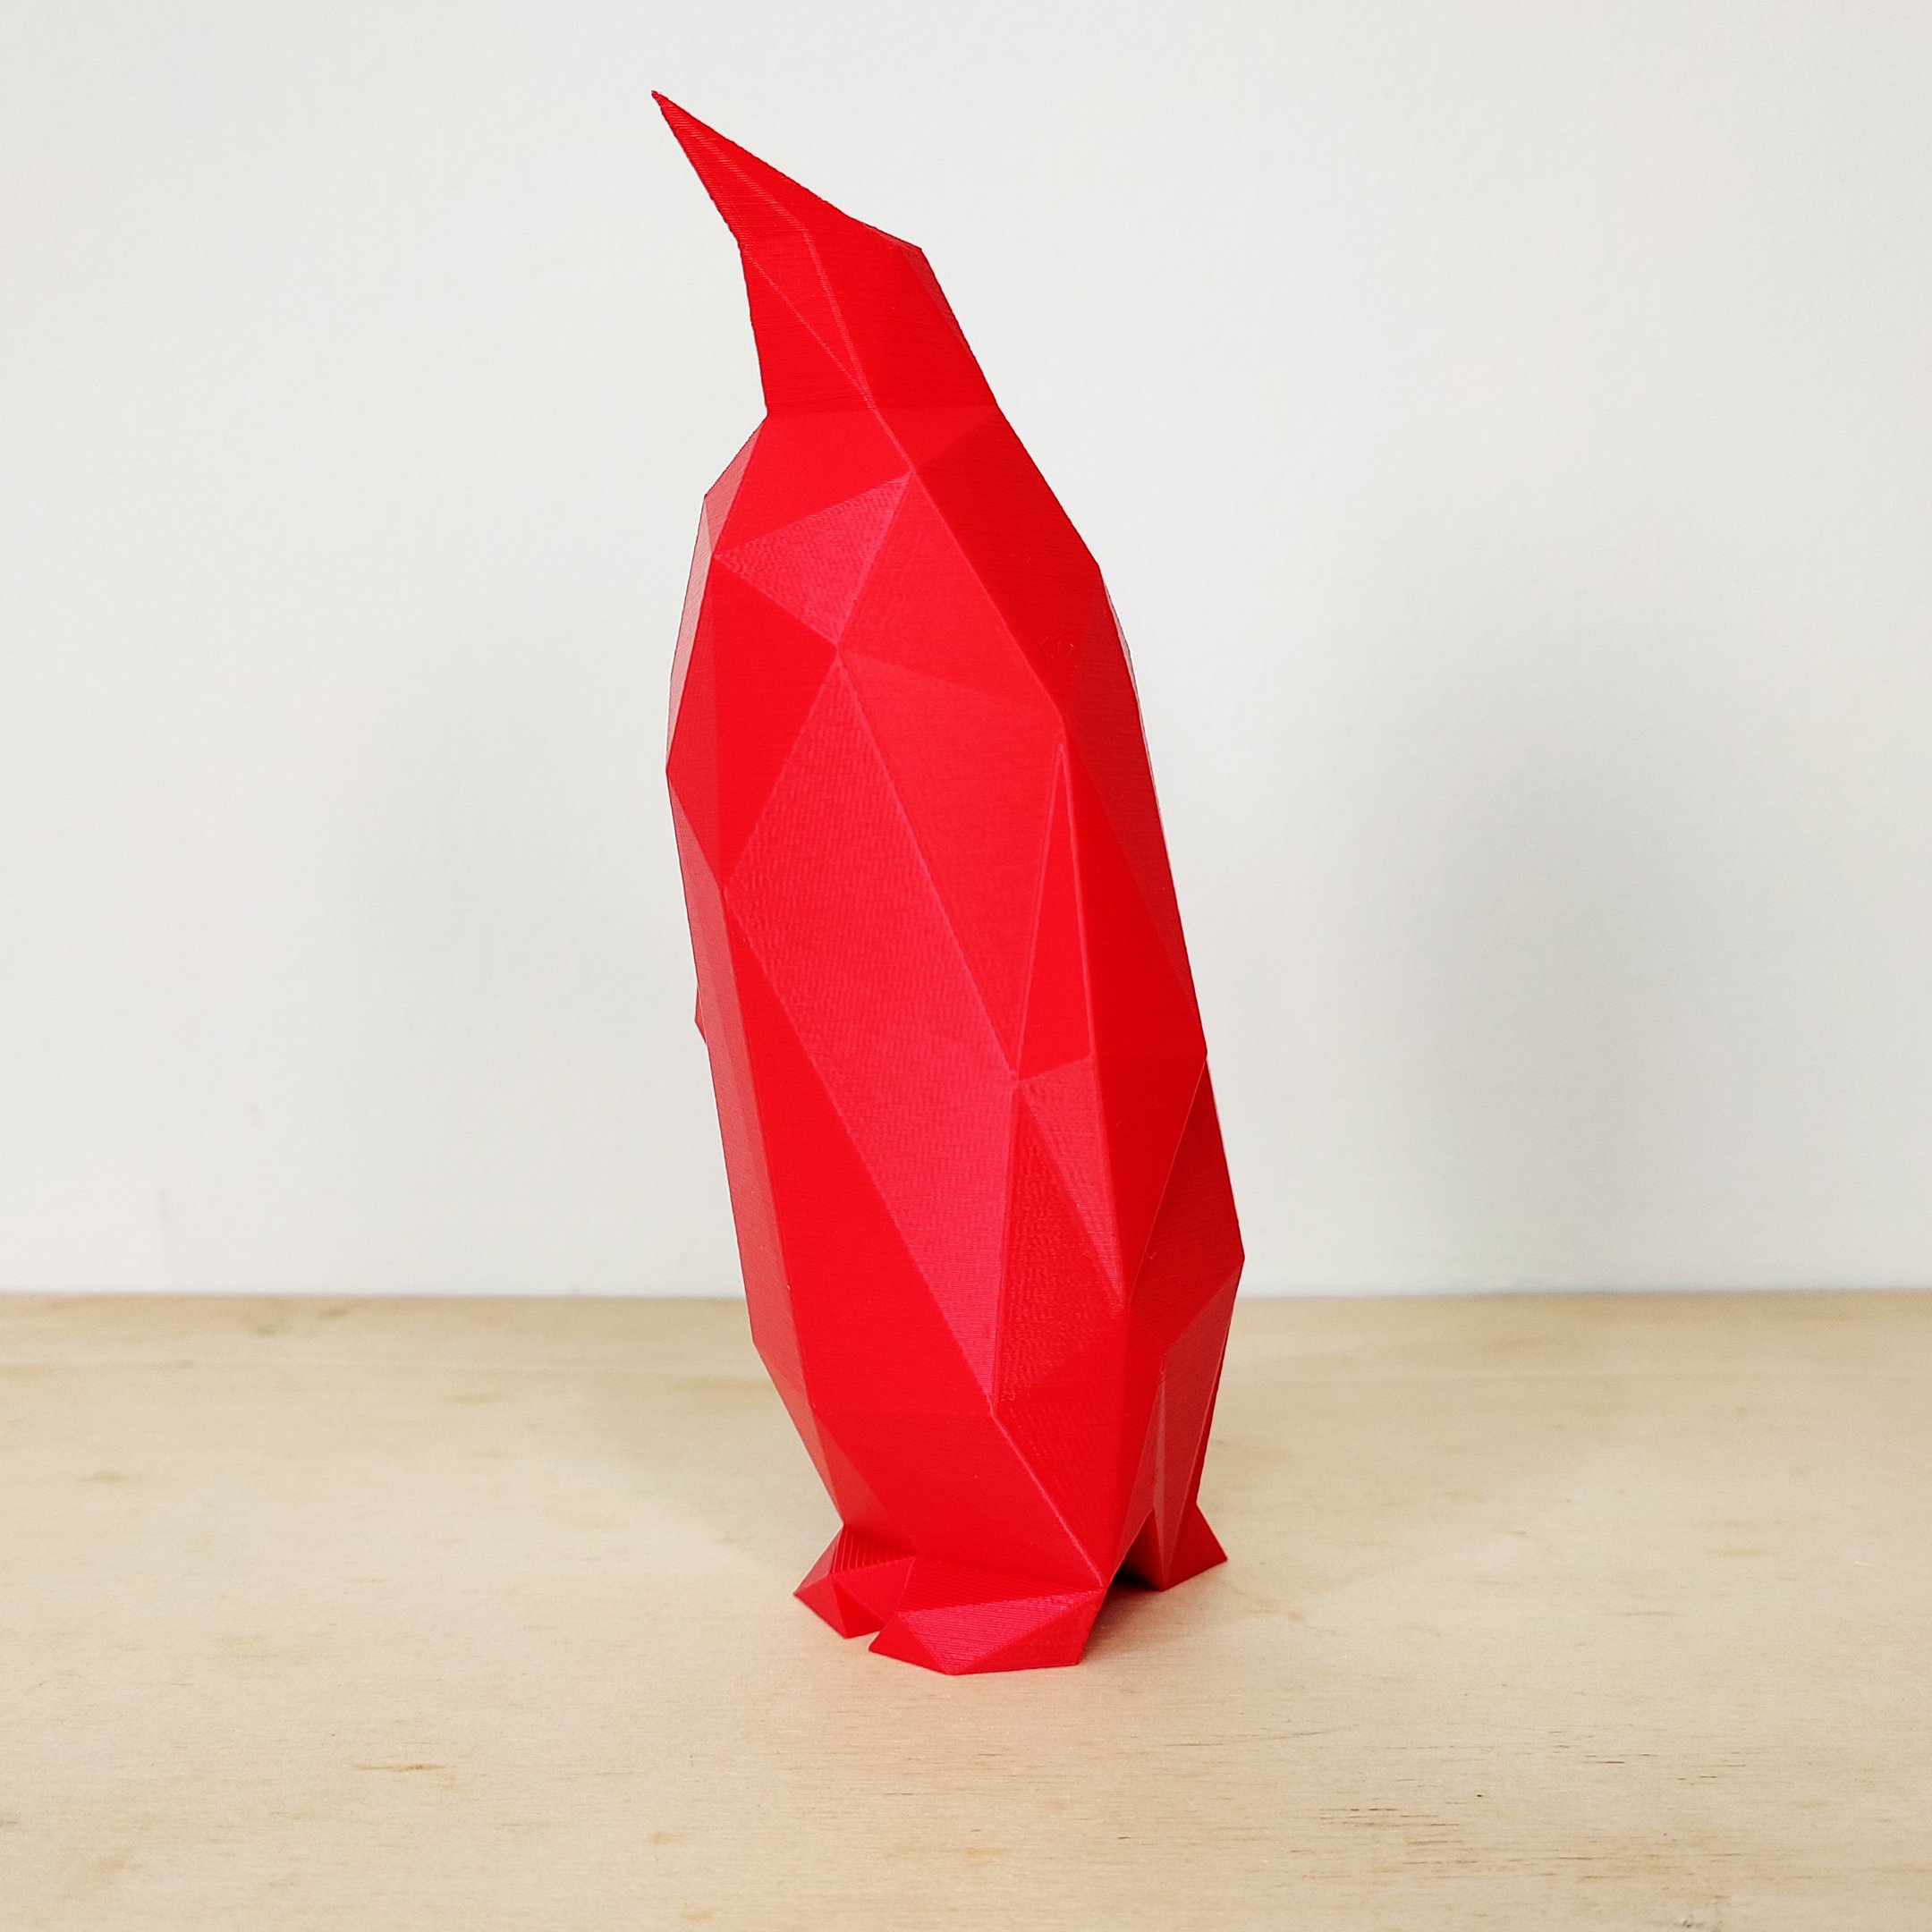 Pinguim Decorativo - 15 Cm De Altura - Toque 3D:Vermelho